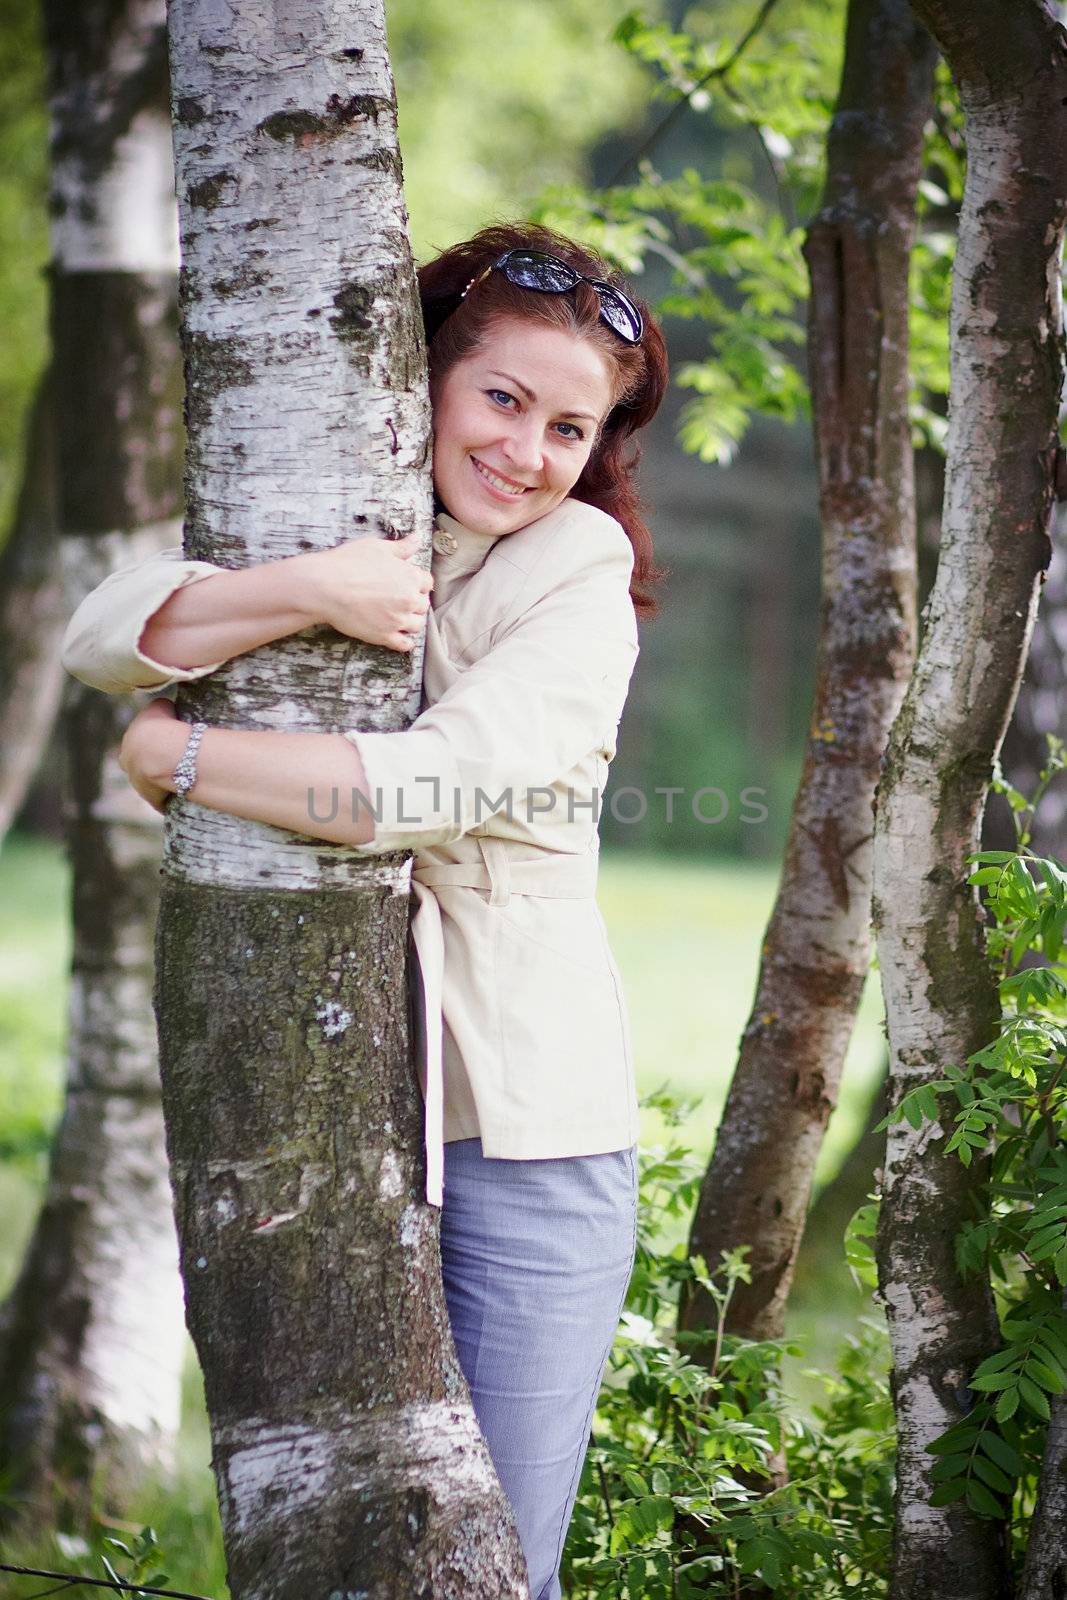 The beautiful woman embracing a birch